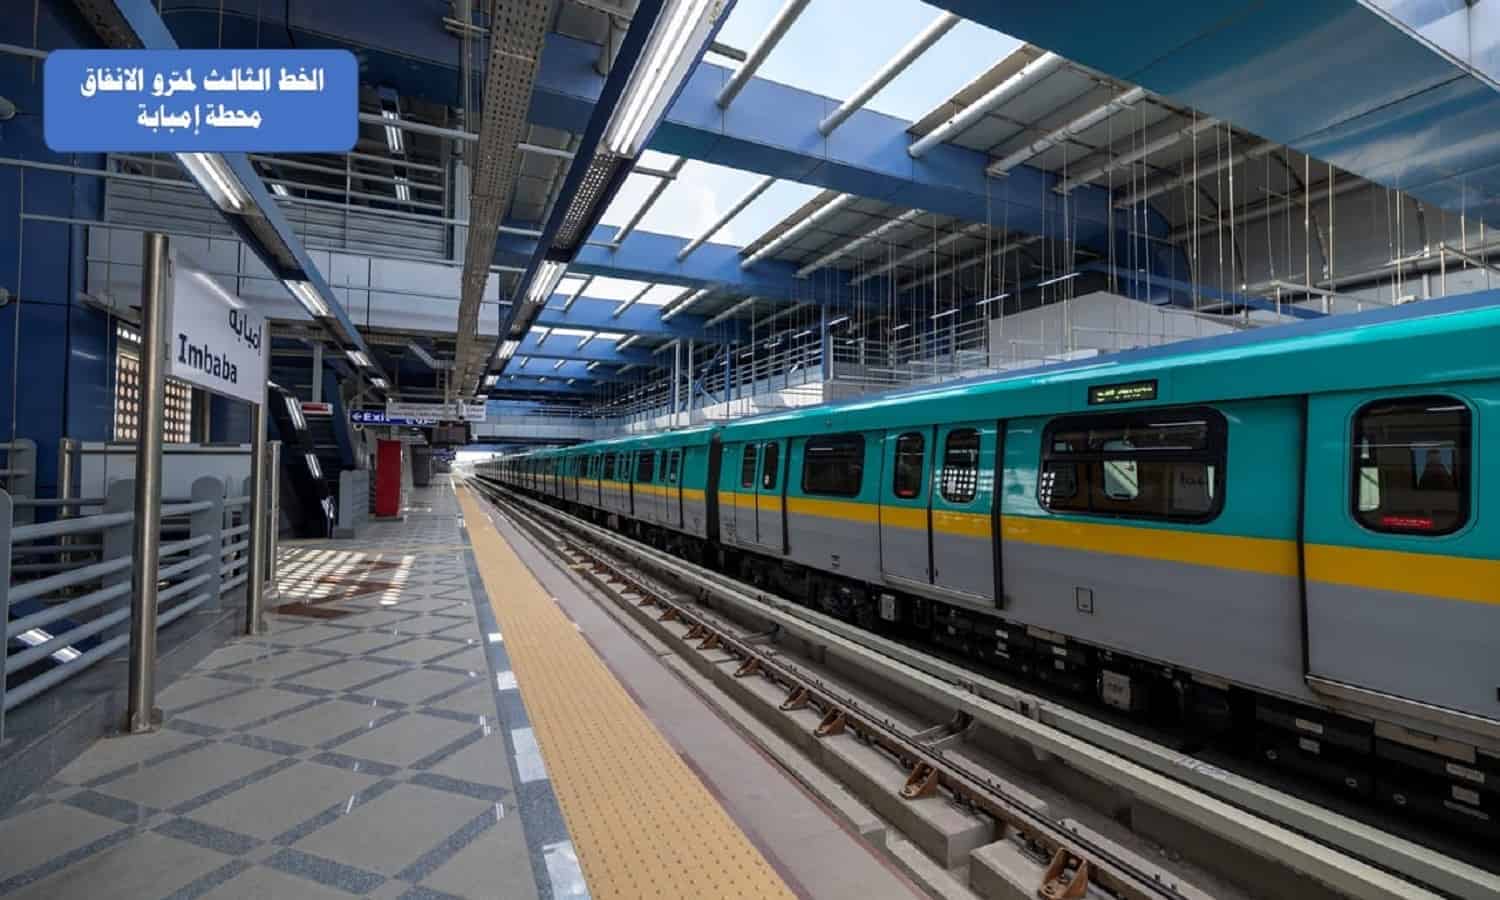 وزير النقل يعلن تشغيل 6 محطات مترو تجريبي بركاب بالخط الثالث غدًا
